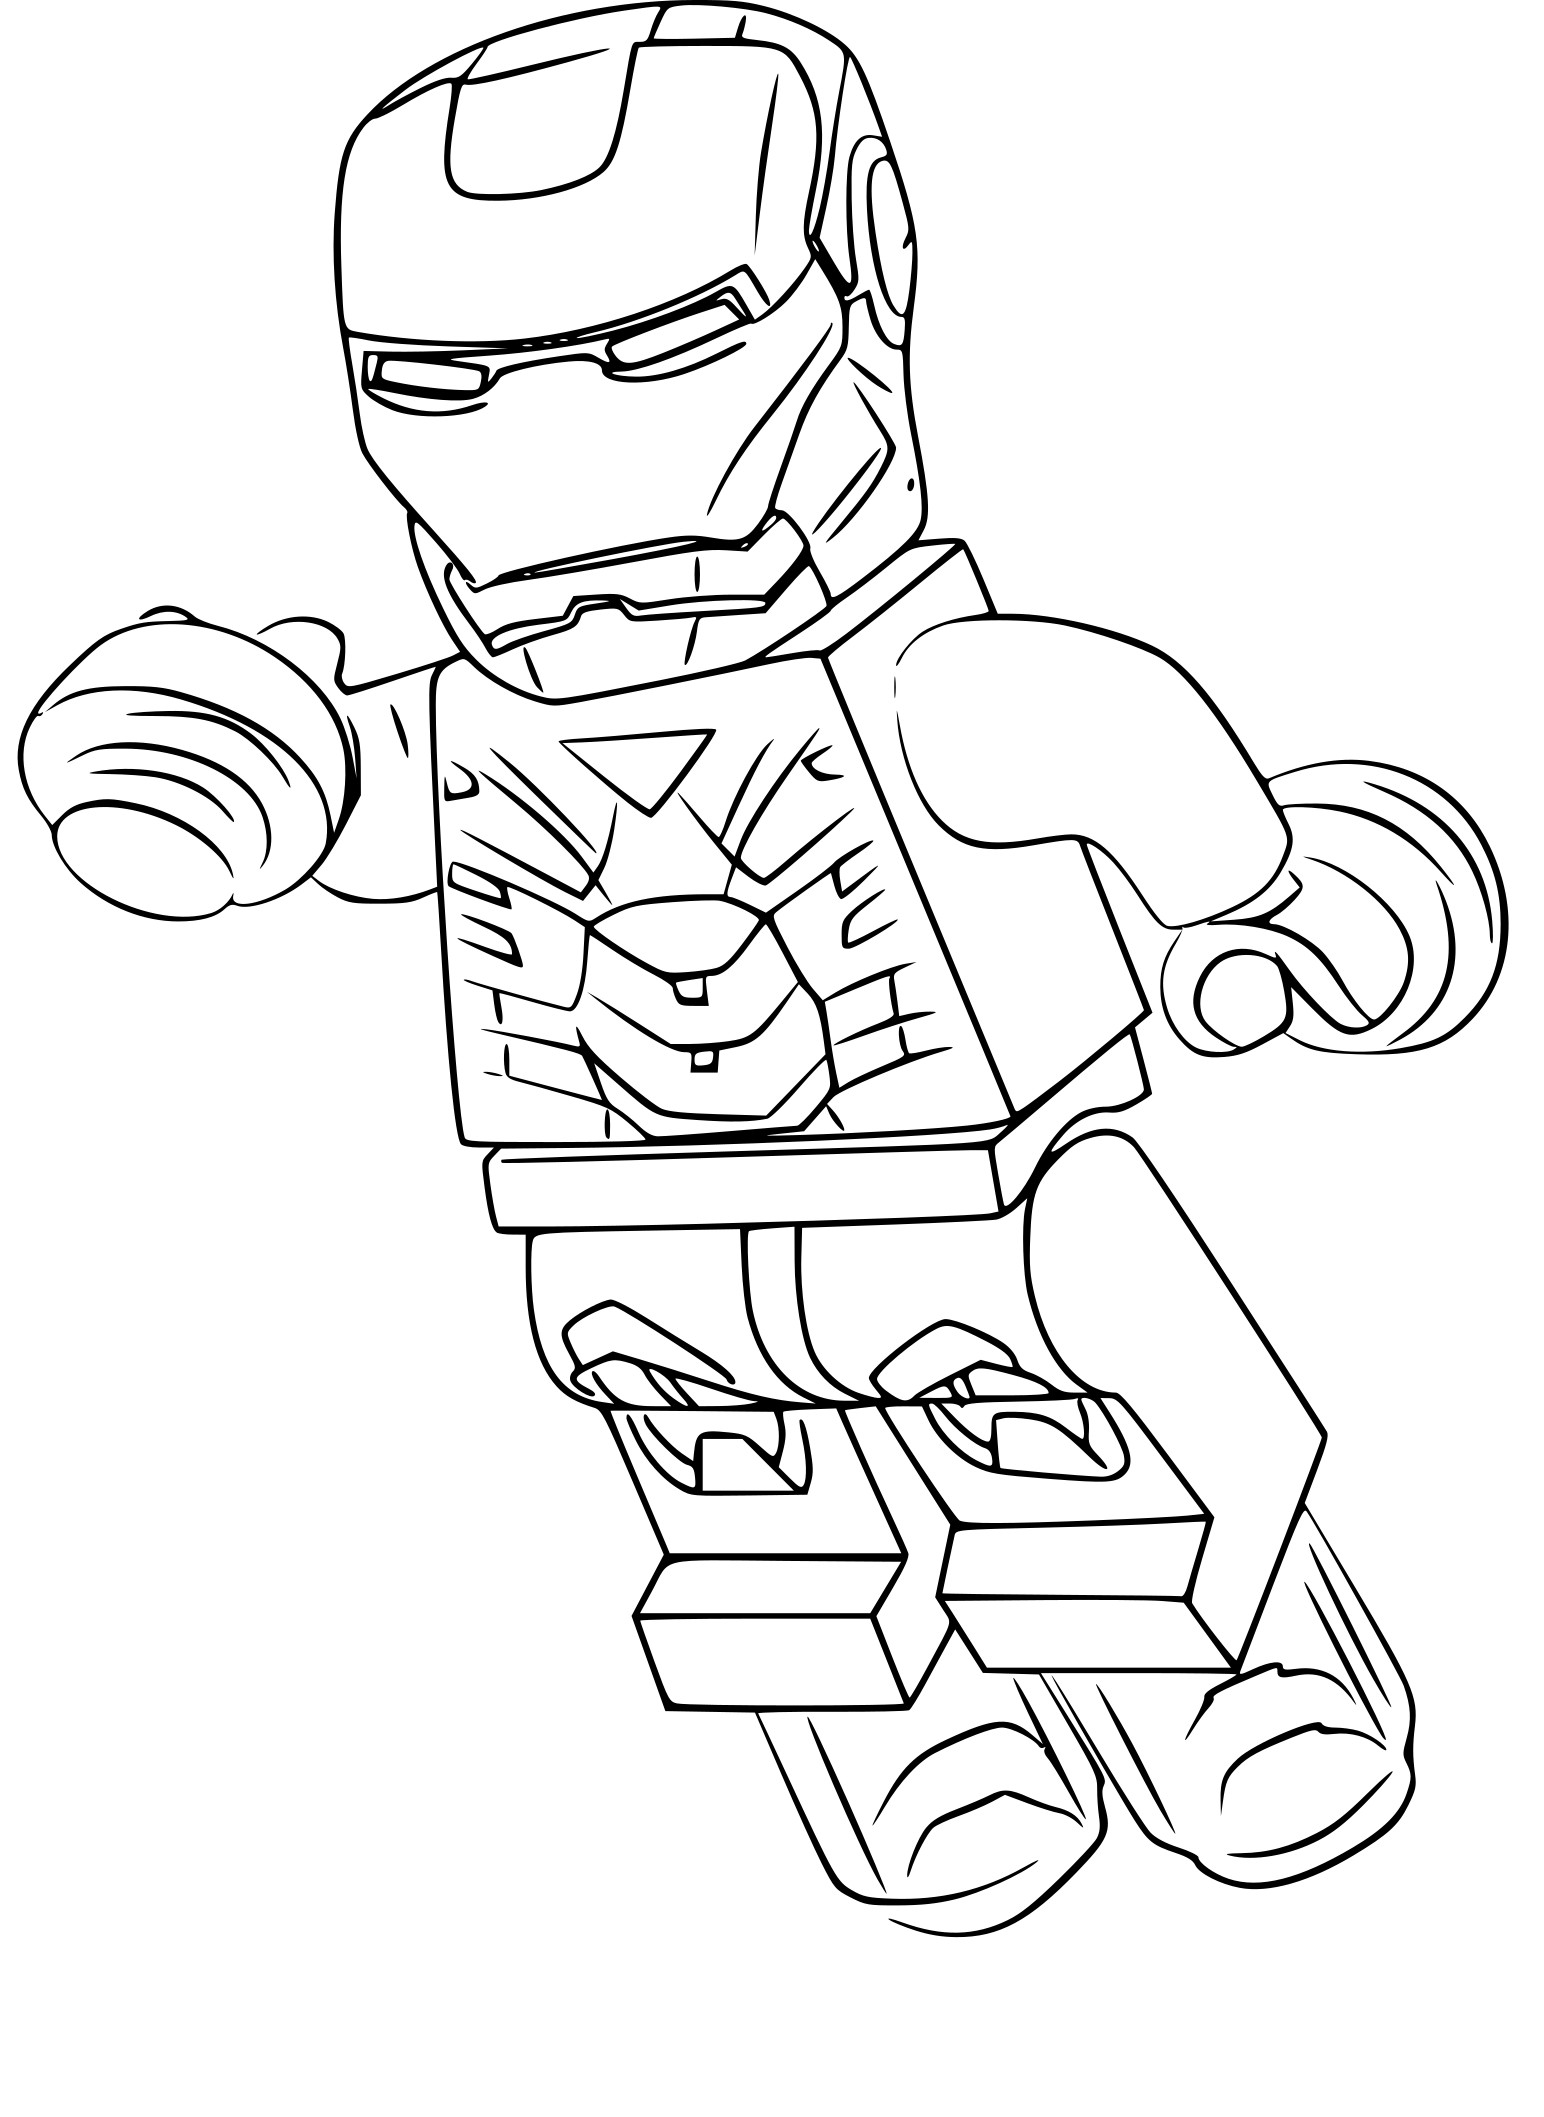 Disegno di Lego Iron Man da colorare